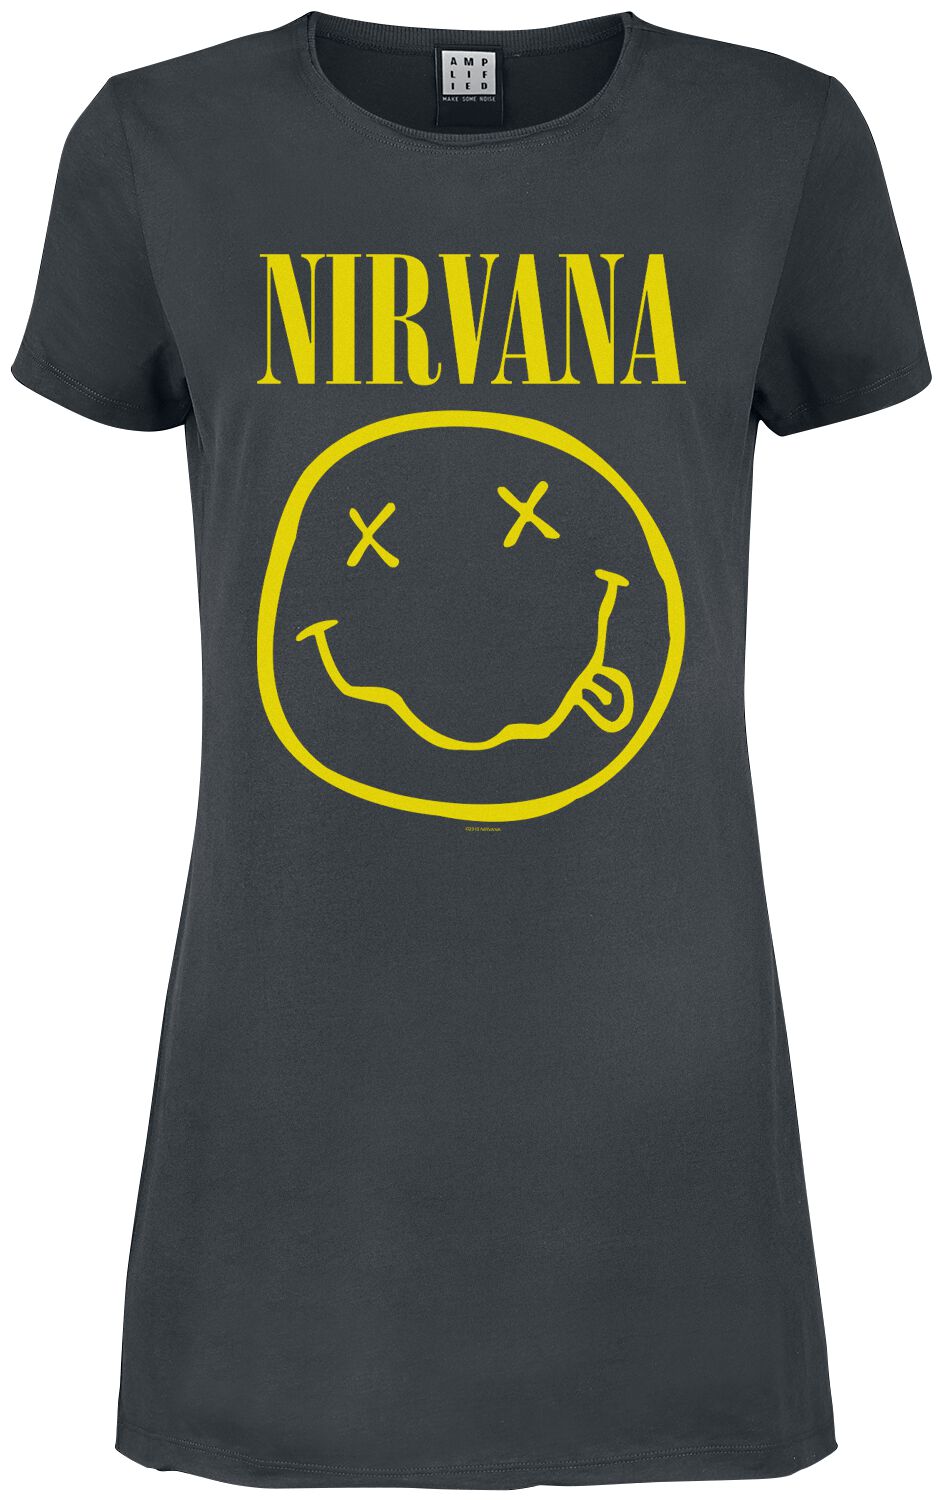 Nirvana Kurzes Kleid - Amplified Collection - Smiley - S bis XXL - für Damen - Größe XXL - charcoal  - Lizenziertes Merchandise!